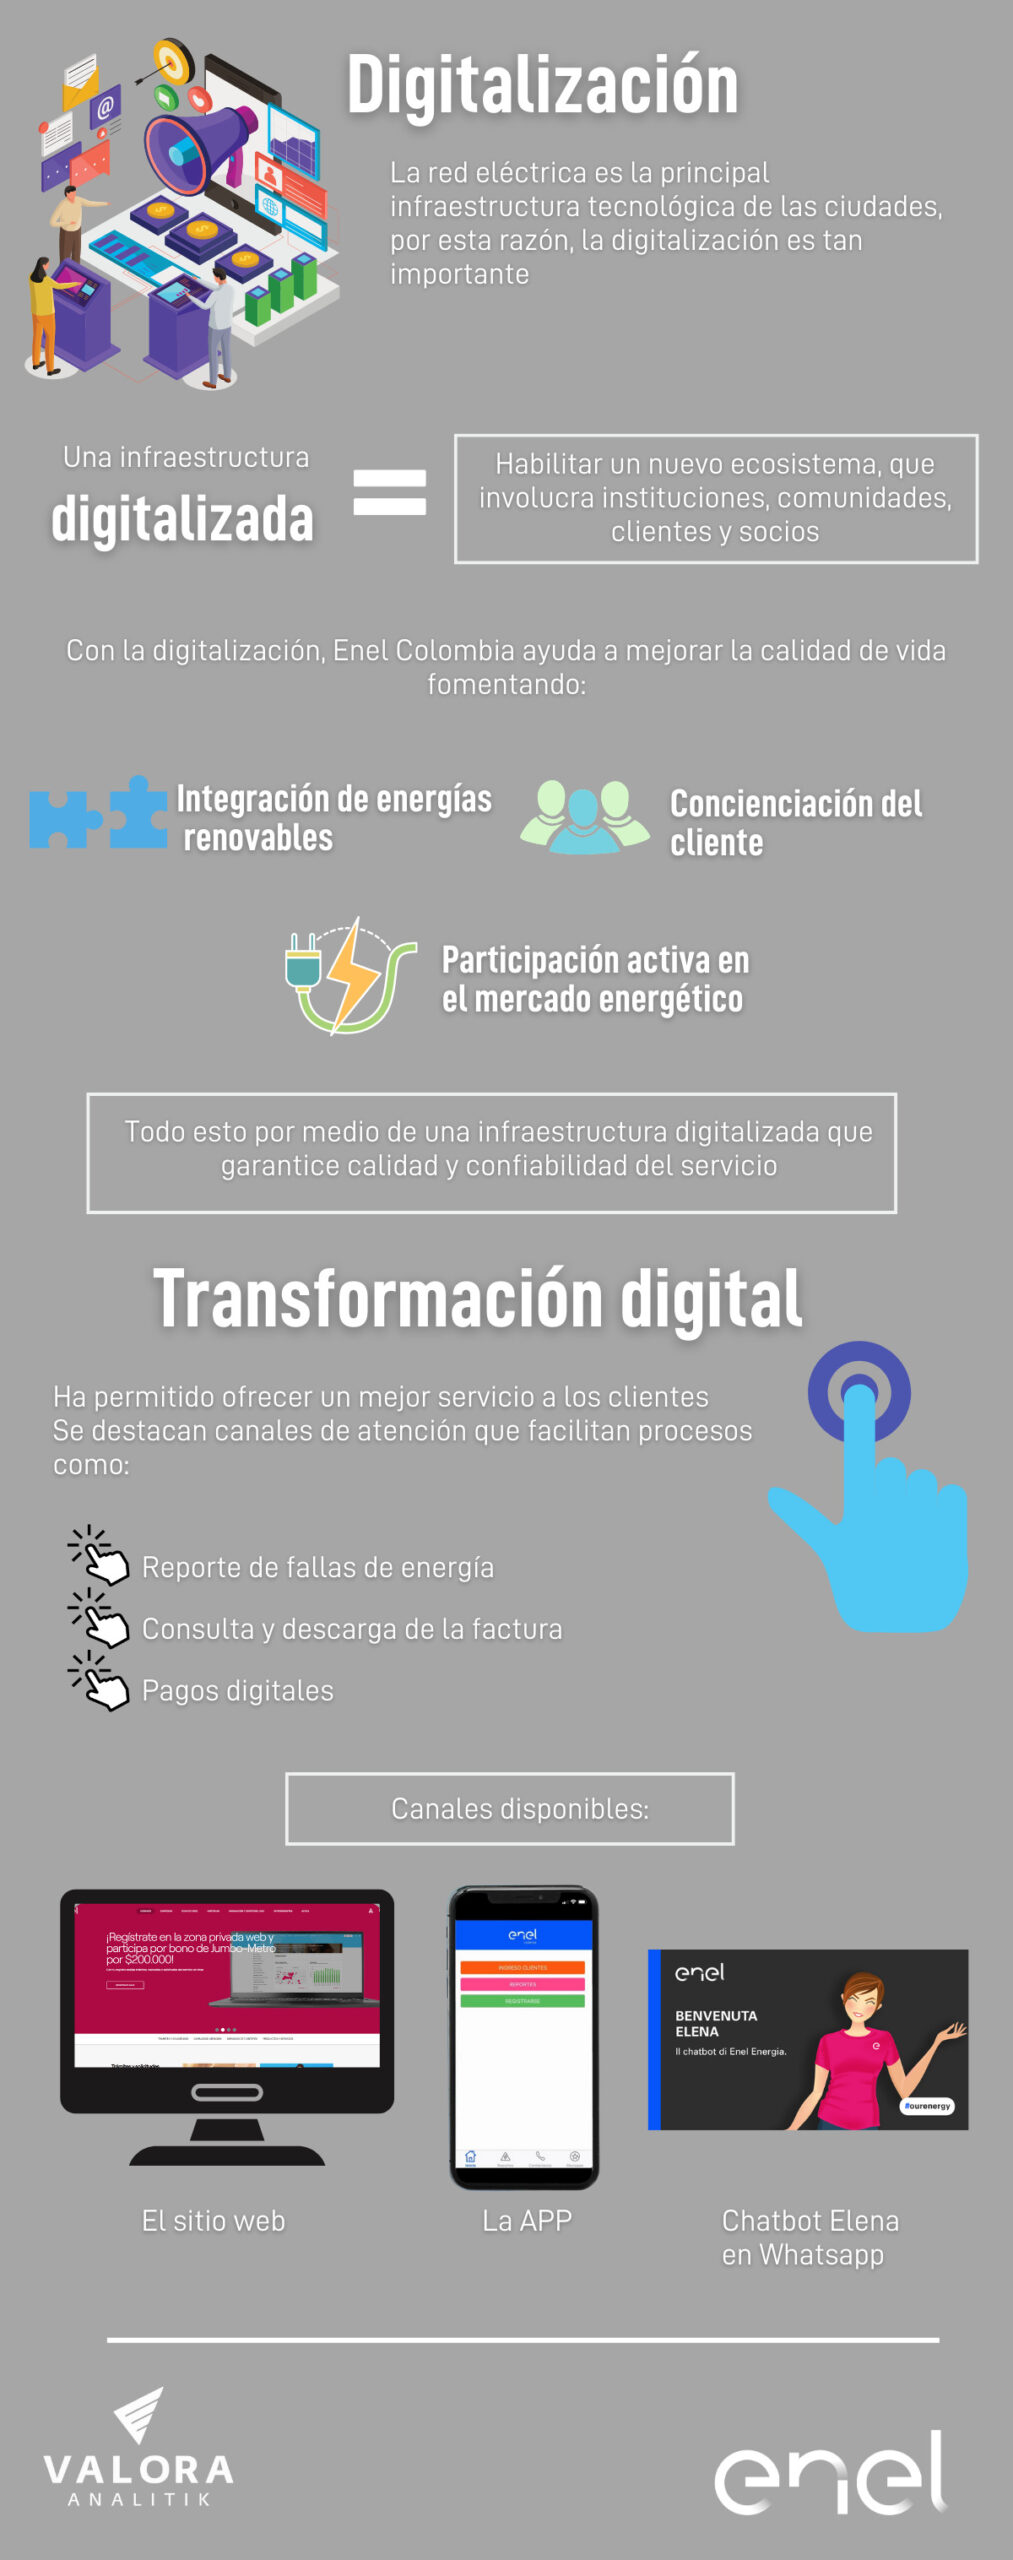 Digitalización, uno de los focos de Enel Colombia para la transición energética